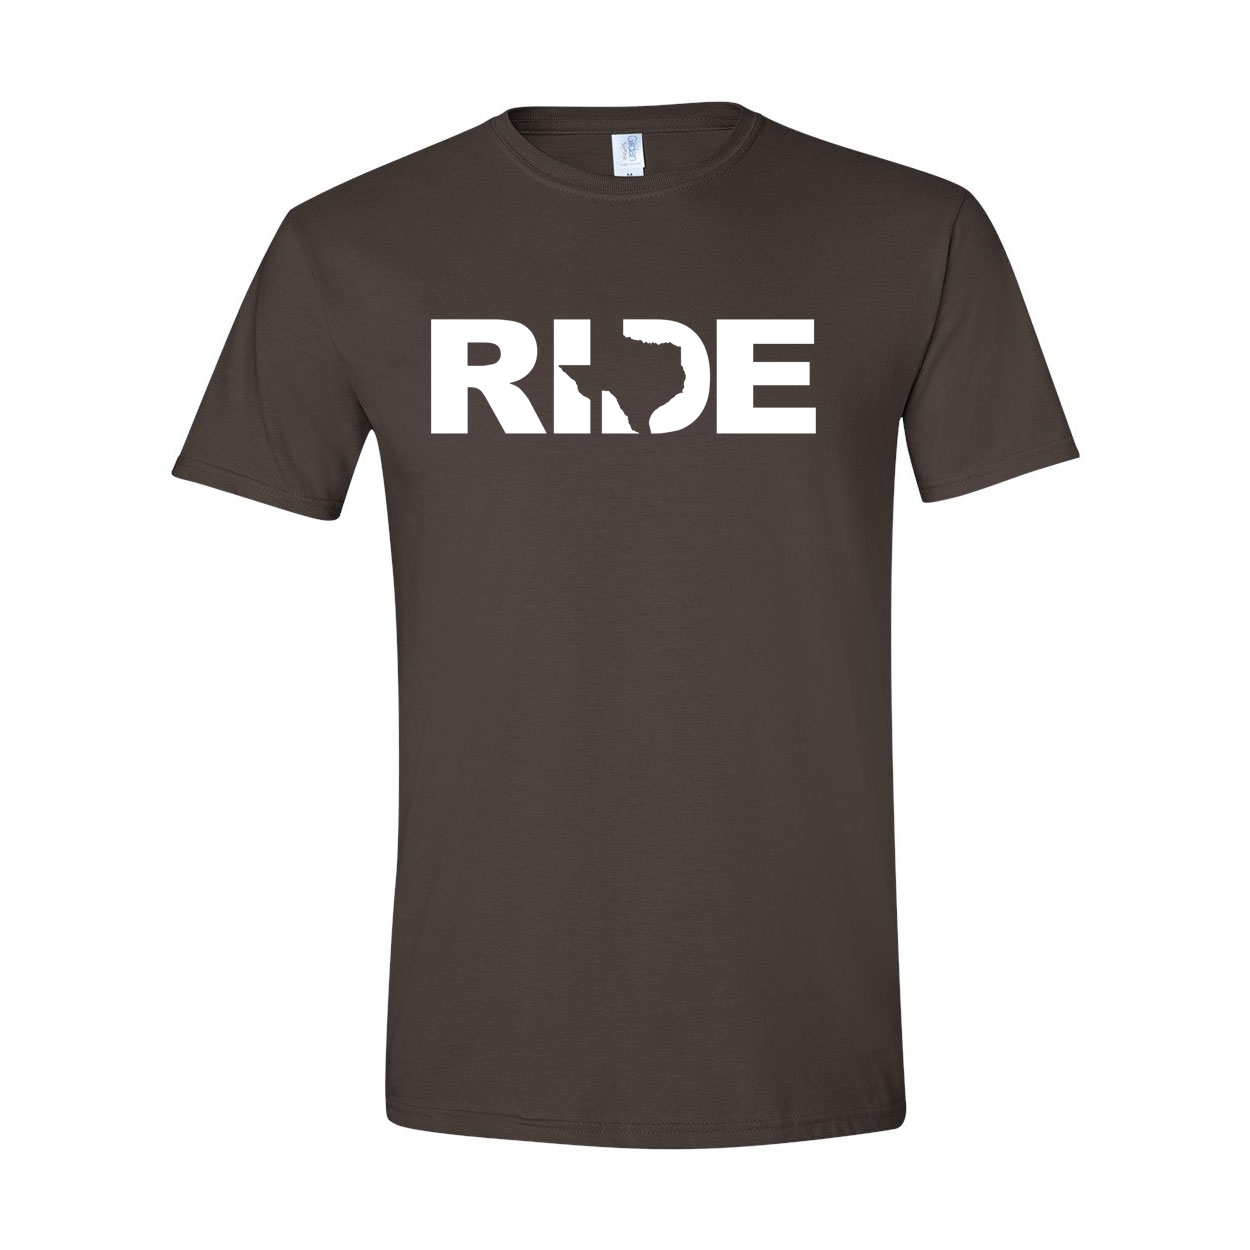 Ride Texas Classic T-Shirt Dark Chocolate Brown (White Logo)